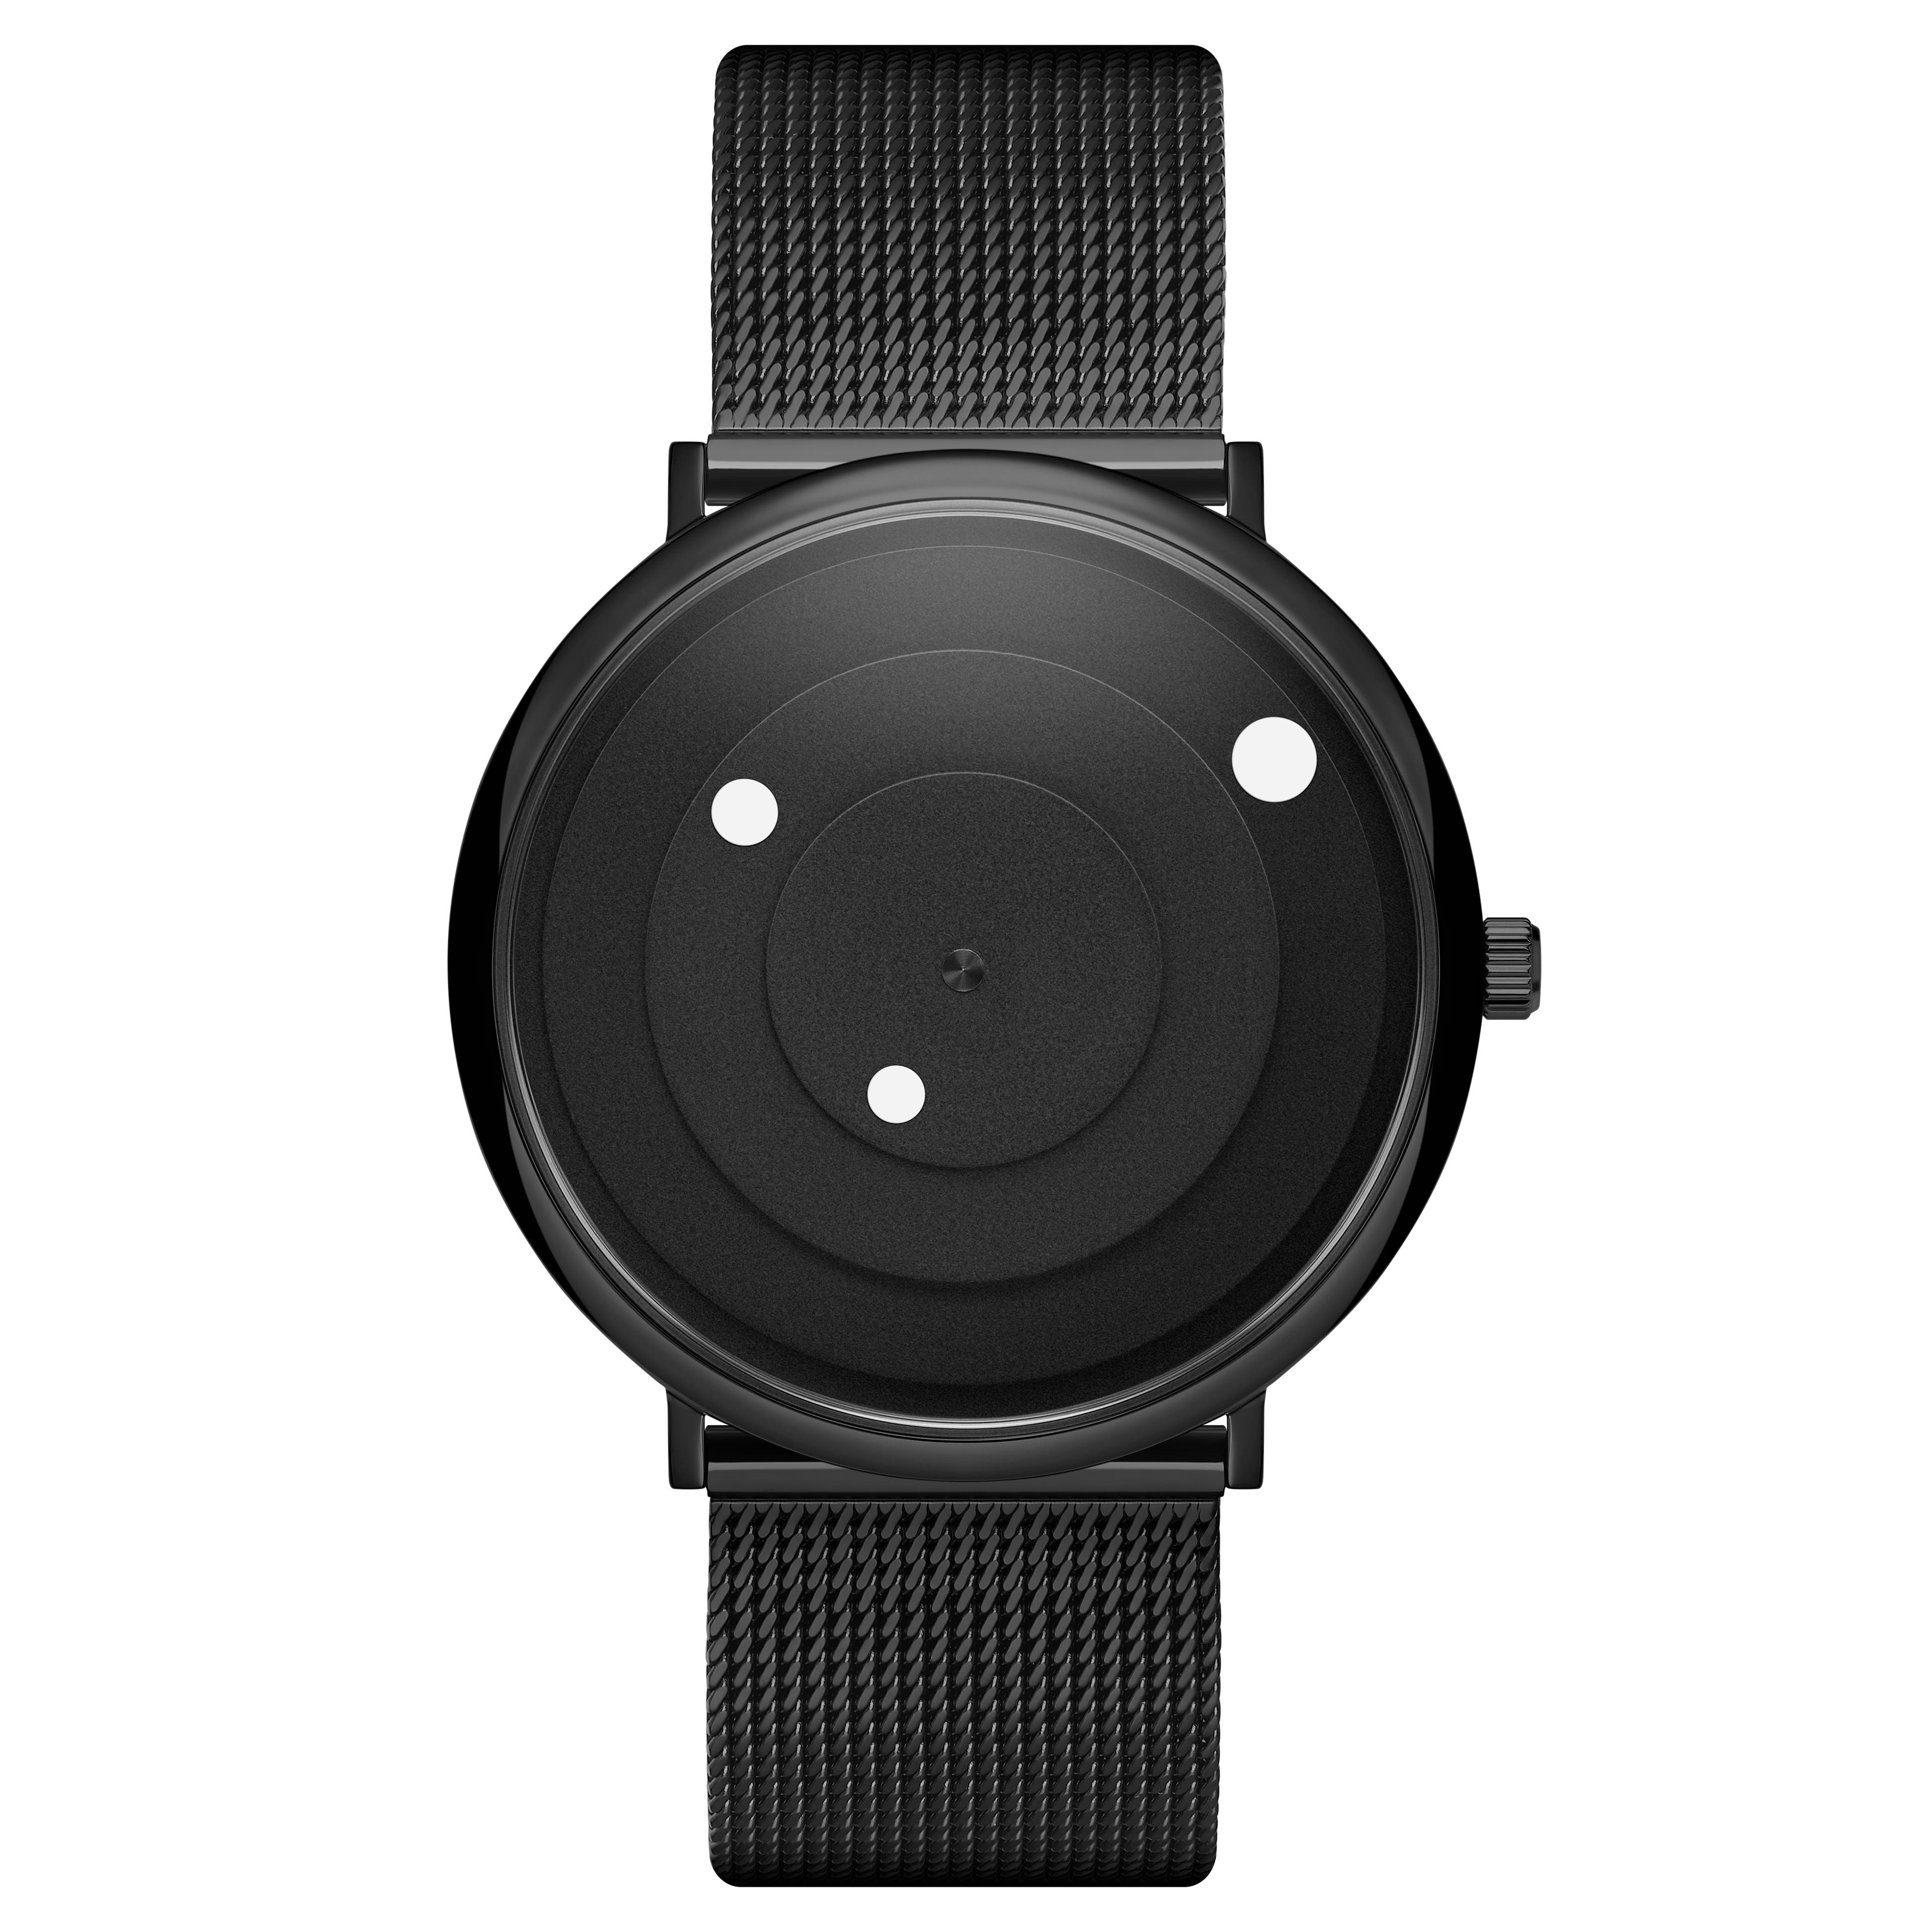 Instant | Minimalistyczny zegarek czarno-biały z siatkową bransoletą